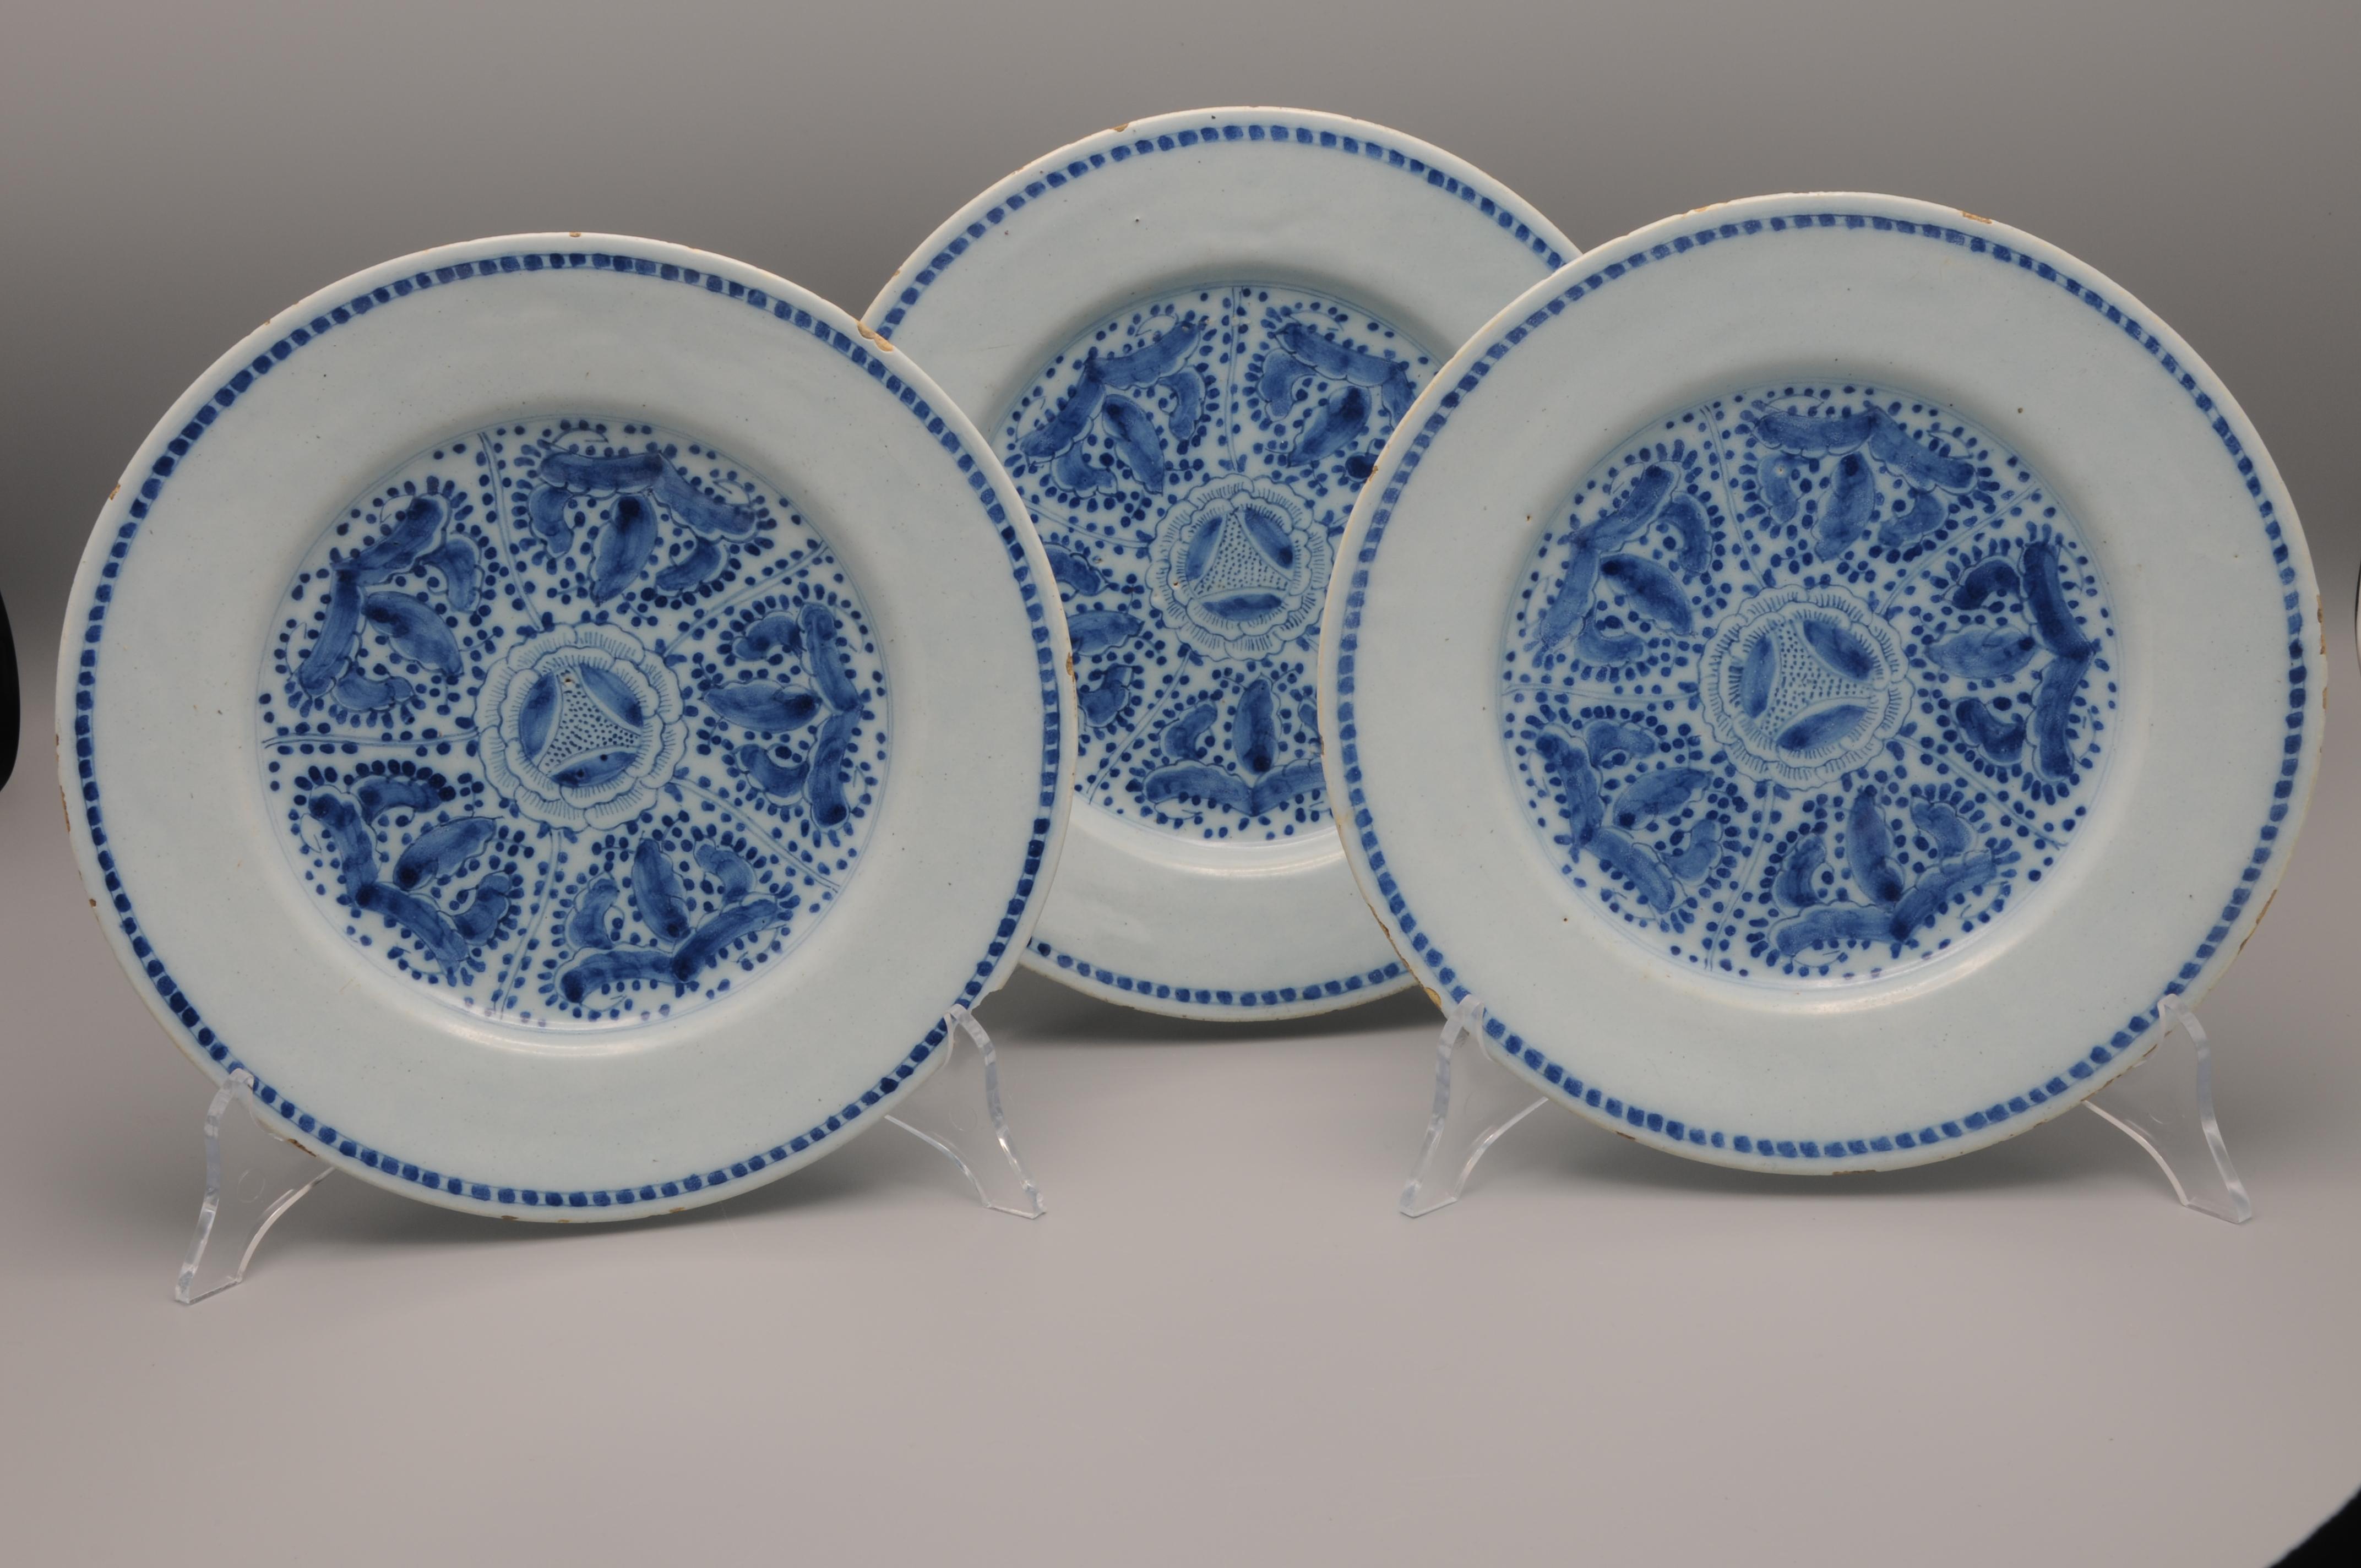 Satz von drei Tellern aus blauer holländischer Delfter Keramik mit einem seltenen Chinoiserie-Dekor aus einem zentralen geometrischen Blumendekor.
Unmarkiert

In gutem Zustand: nur die üblichen Gebrauchsspuren am Rand. 